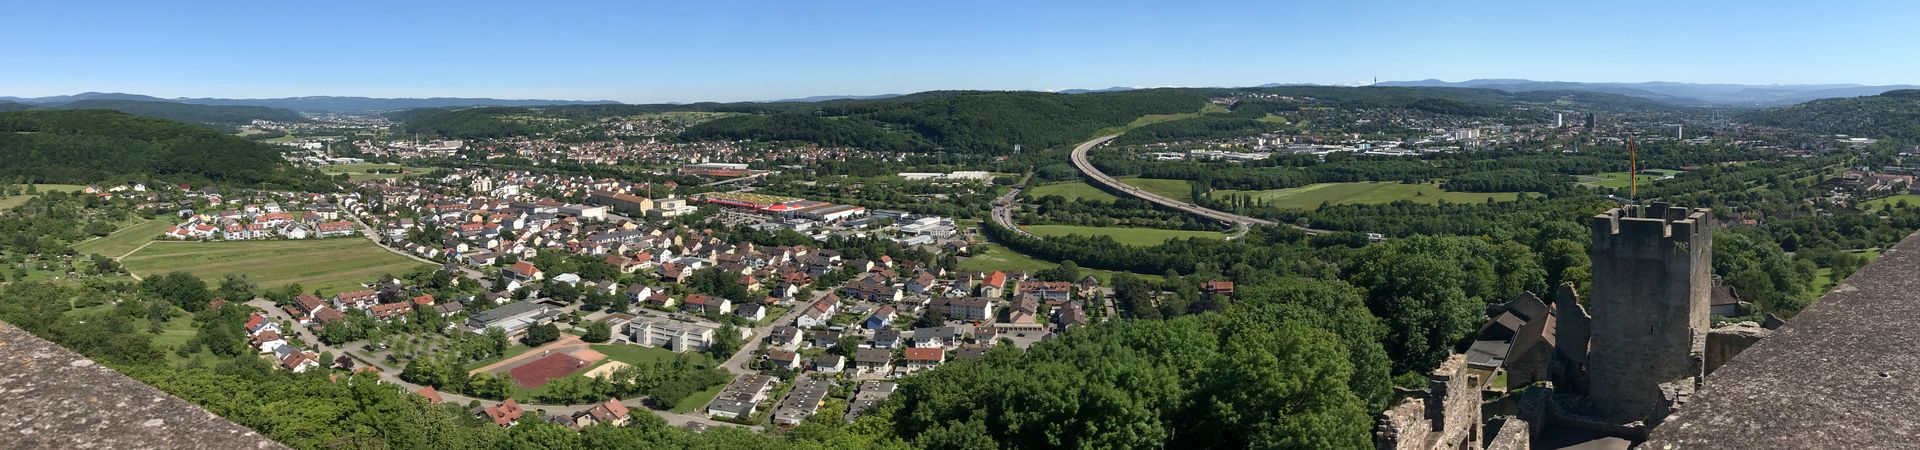 Panorama: Blick von der Burg Rötteln auf Lörrach